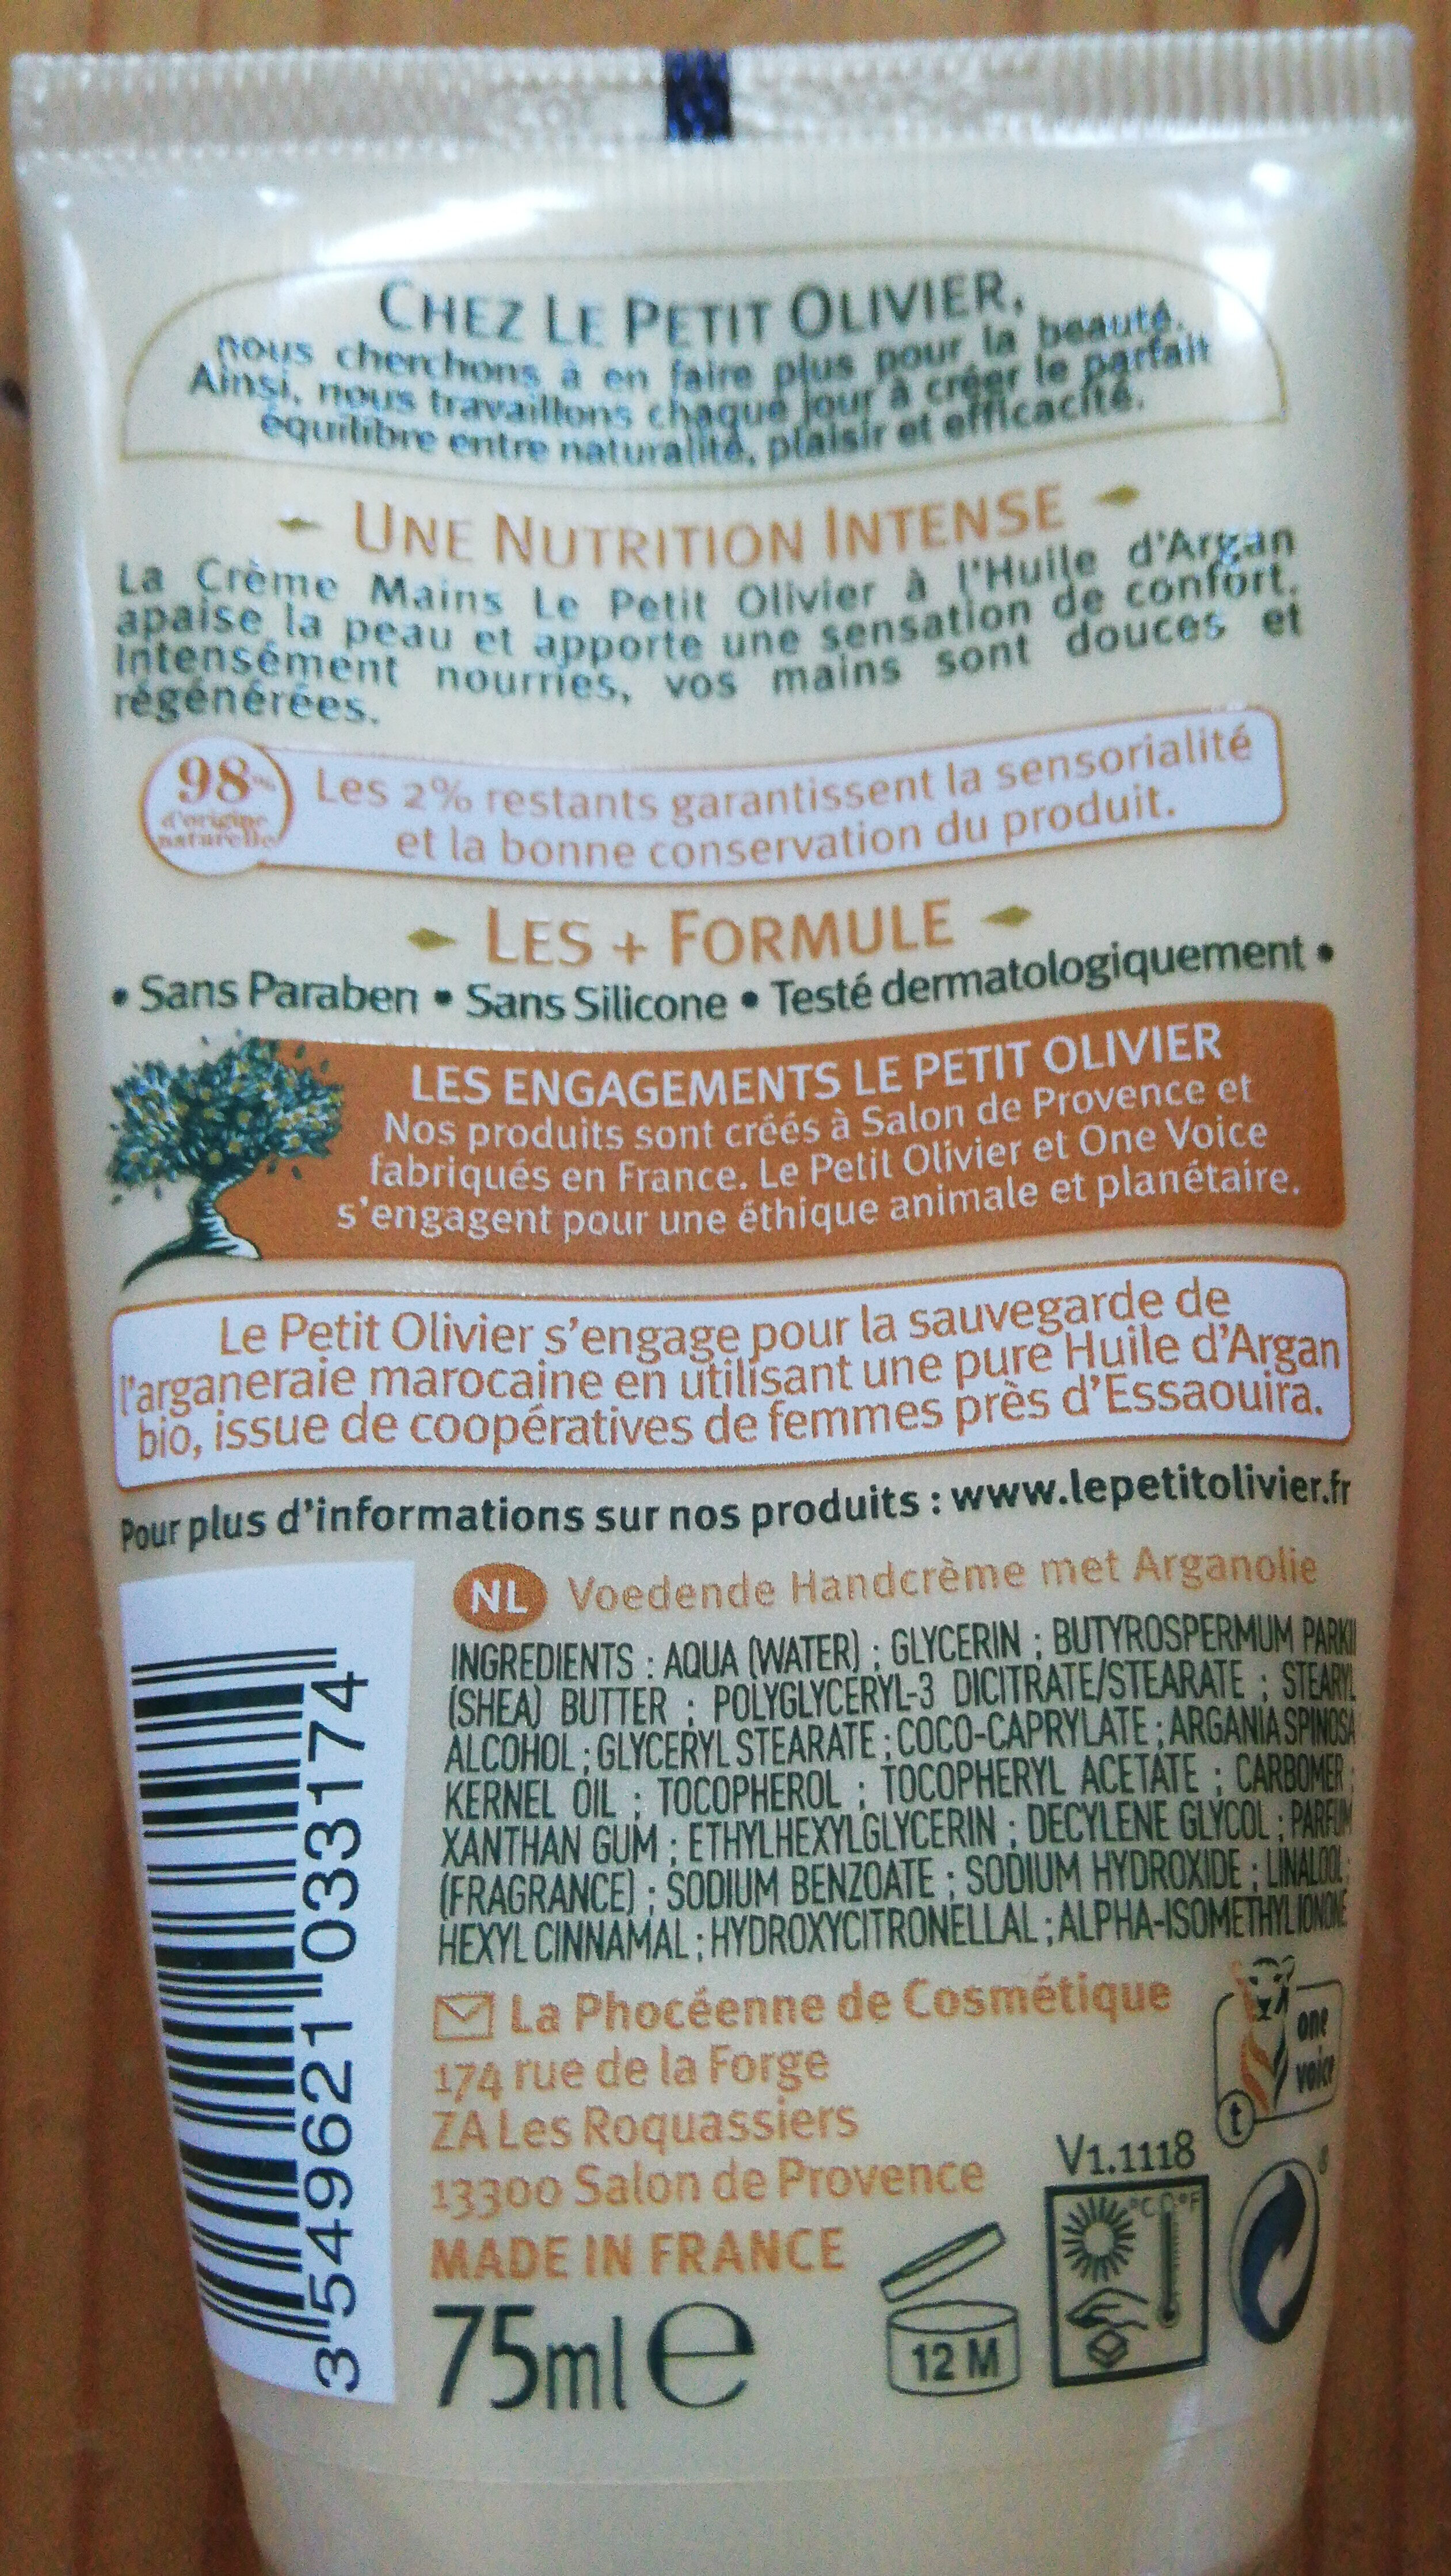 Crème Mains Nourissante - Ingredients - fr